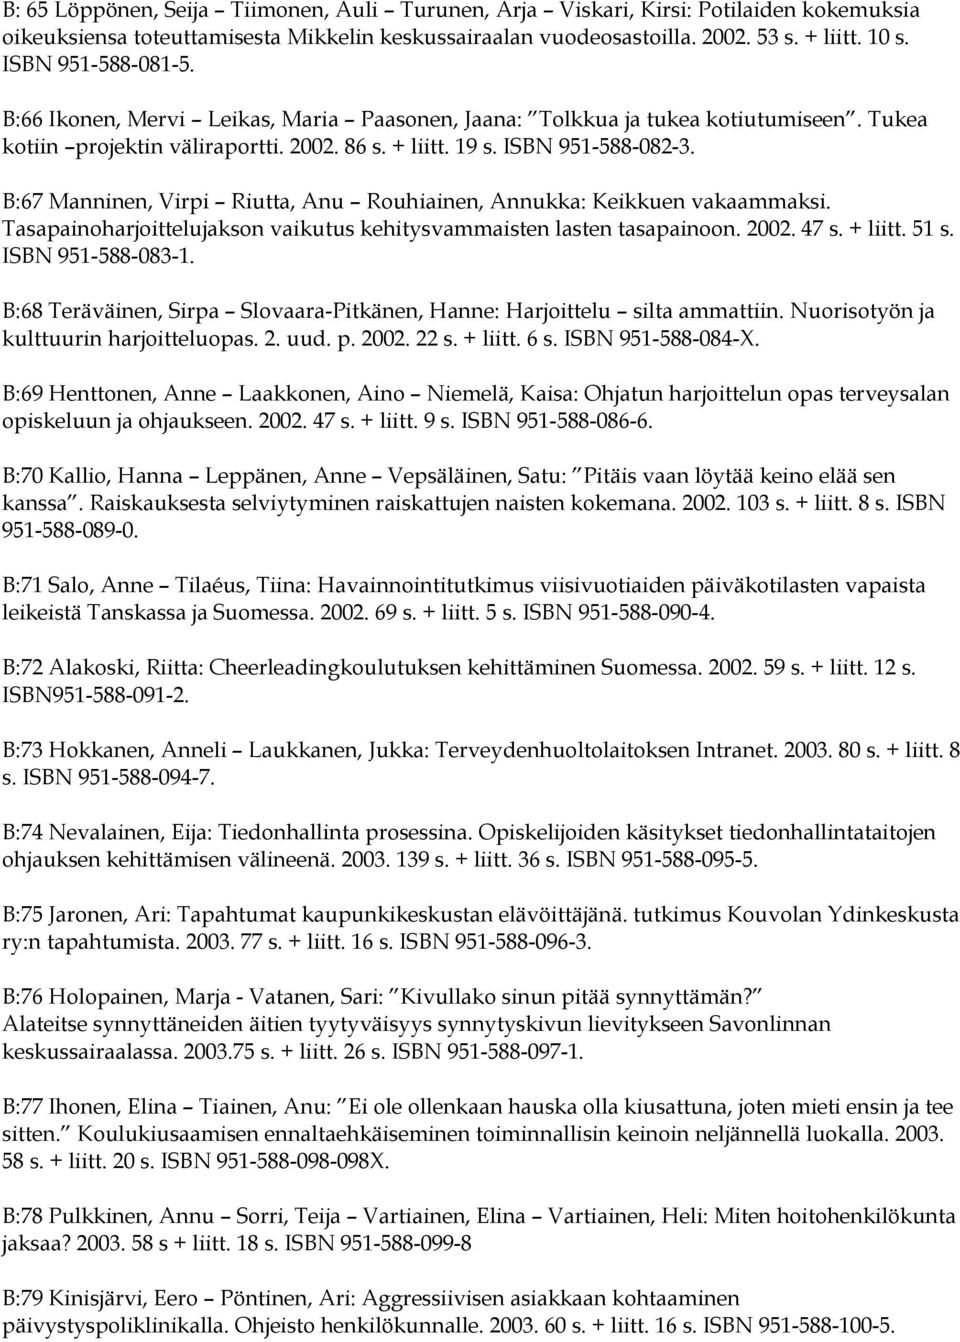 B:67 Manninen, Virpi Riutta, Anu Rouhiainen, Annukka: Keikkuen vakaammaksi. Tasapainoharjoittelujakson vaikutus kehitysvammaisten lasten tasapainoon. 2002. 47 s. + liitt. 51 s. ISBN 951-588-083-1.